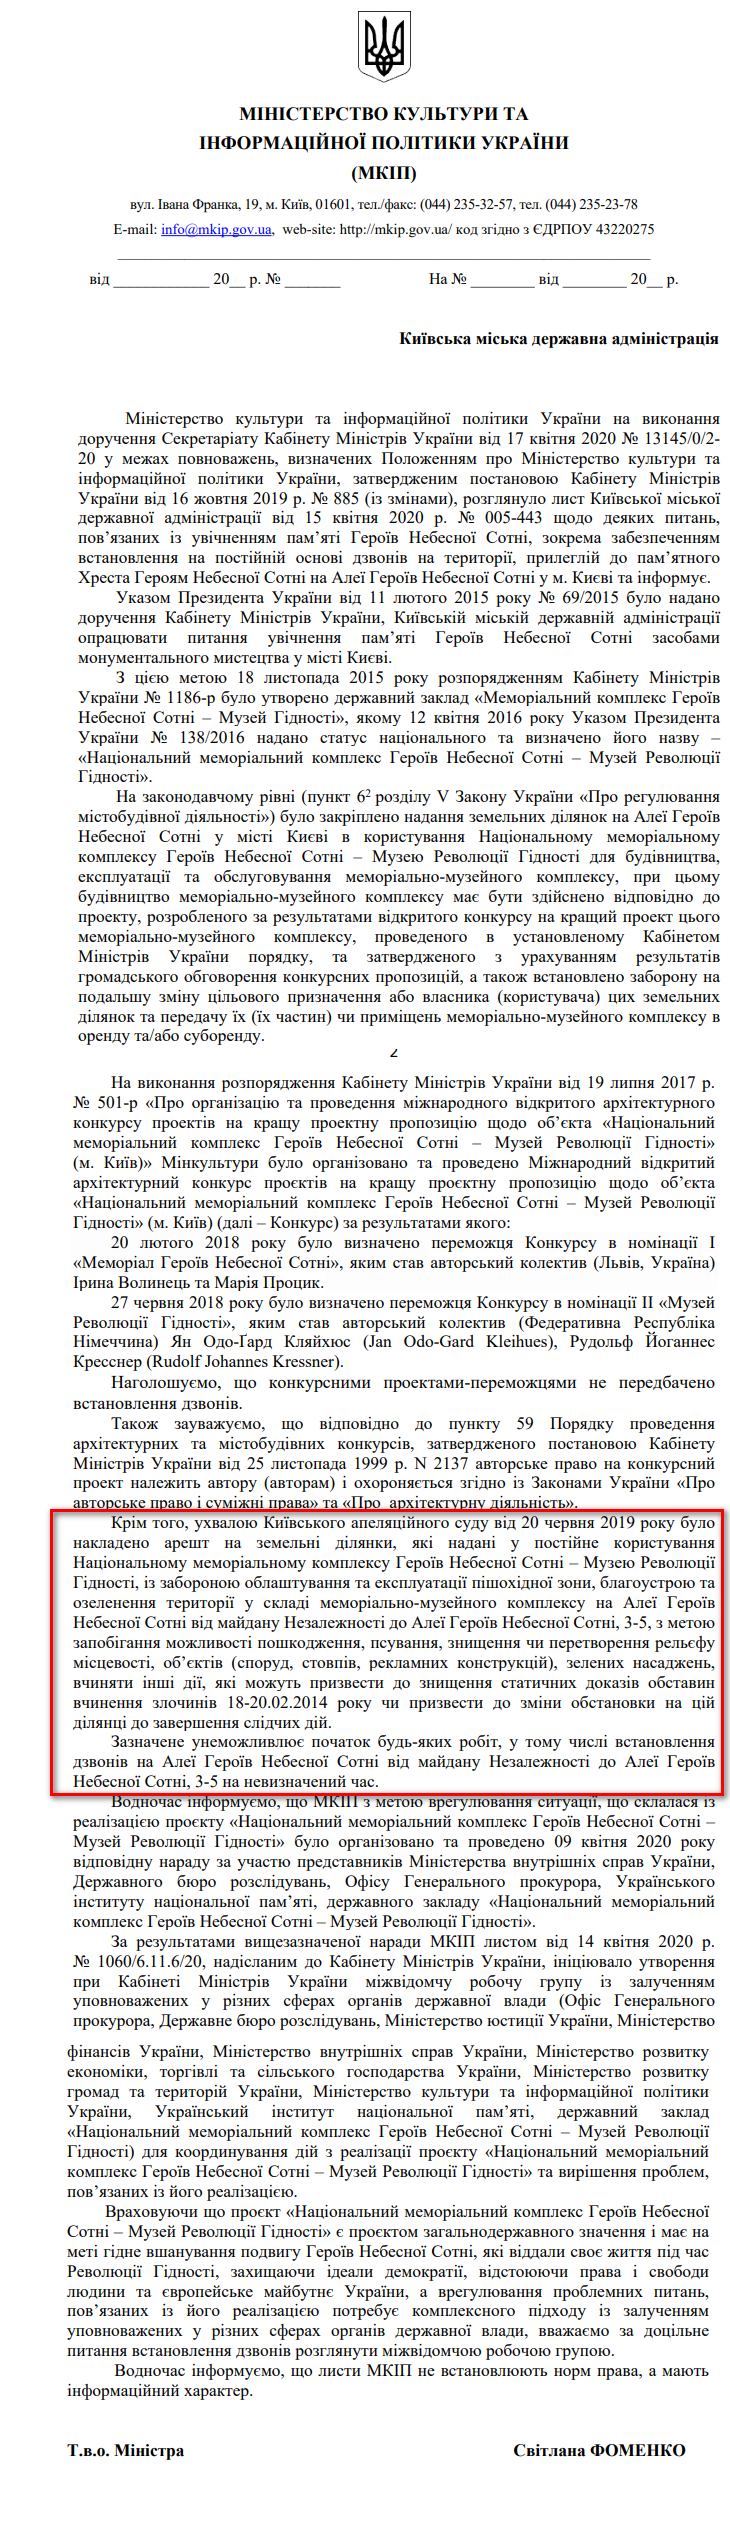 Лист Міністерства культури та інформаційної політики України від 24 червня 2020 року